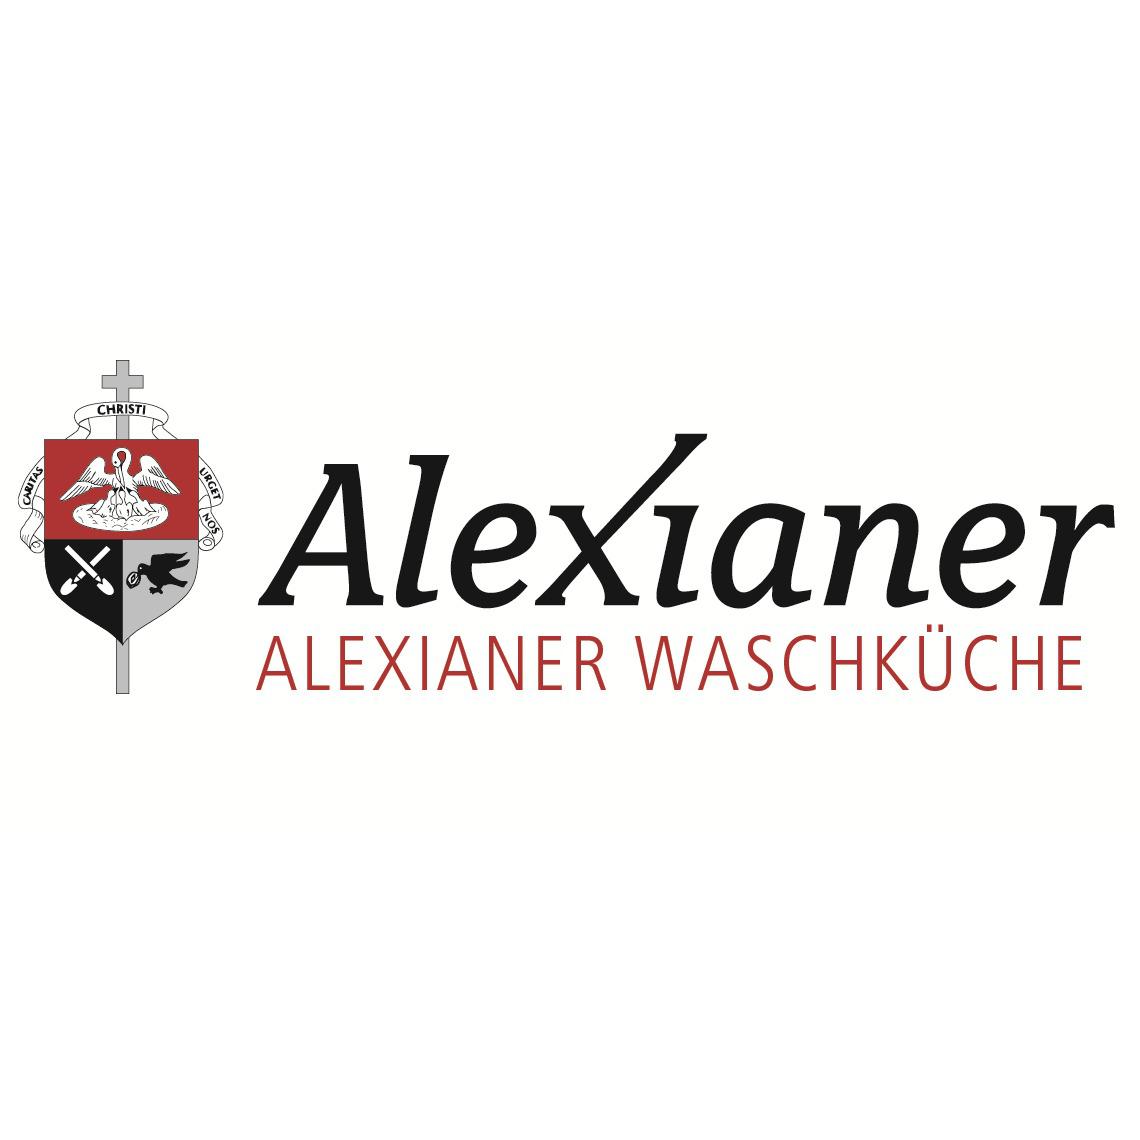 Alexianer Waschküche Münster 0251 9731027500